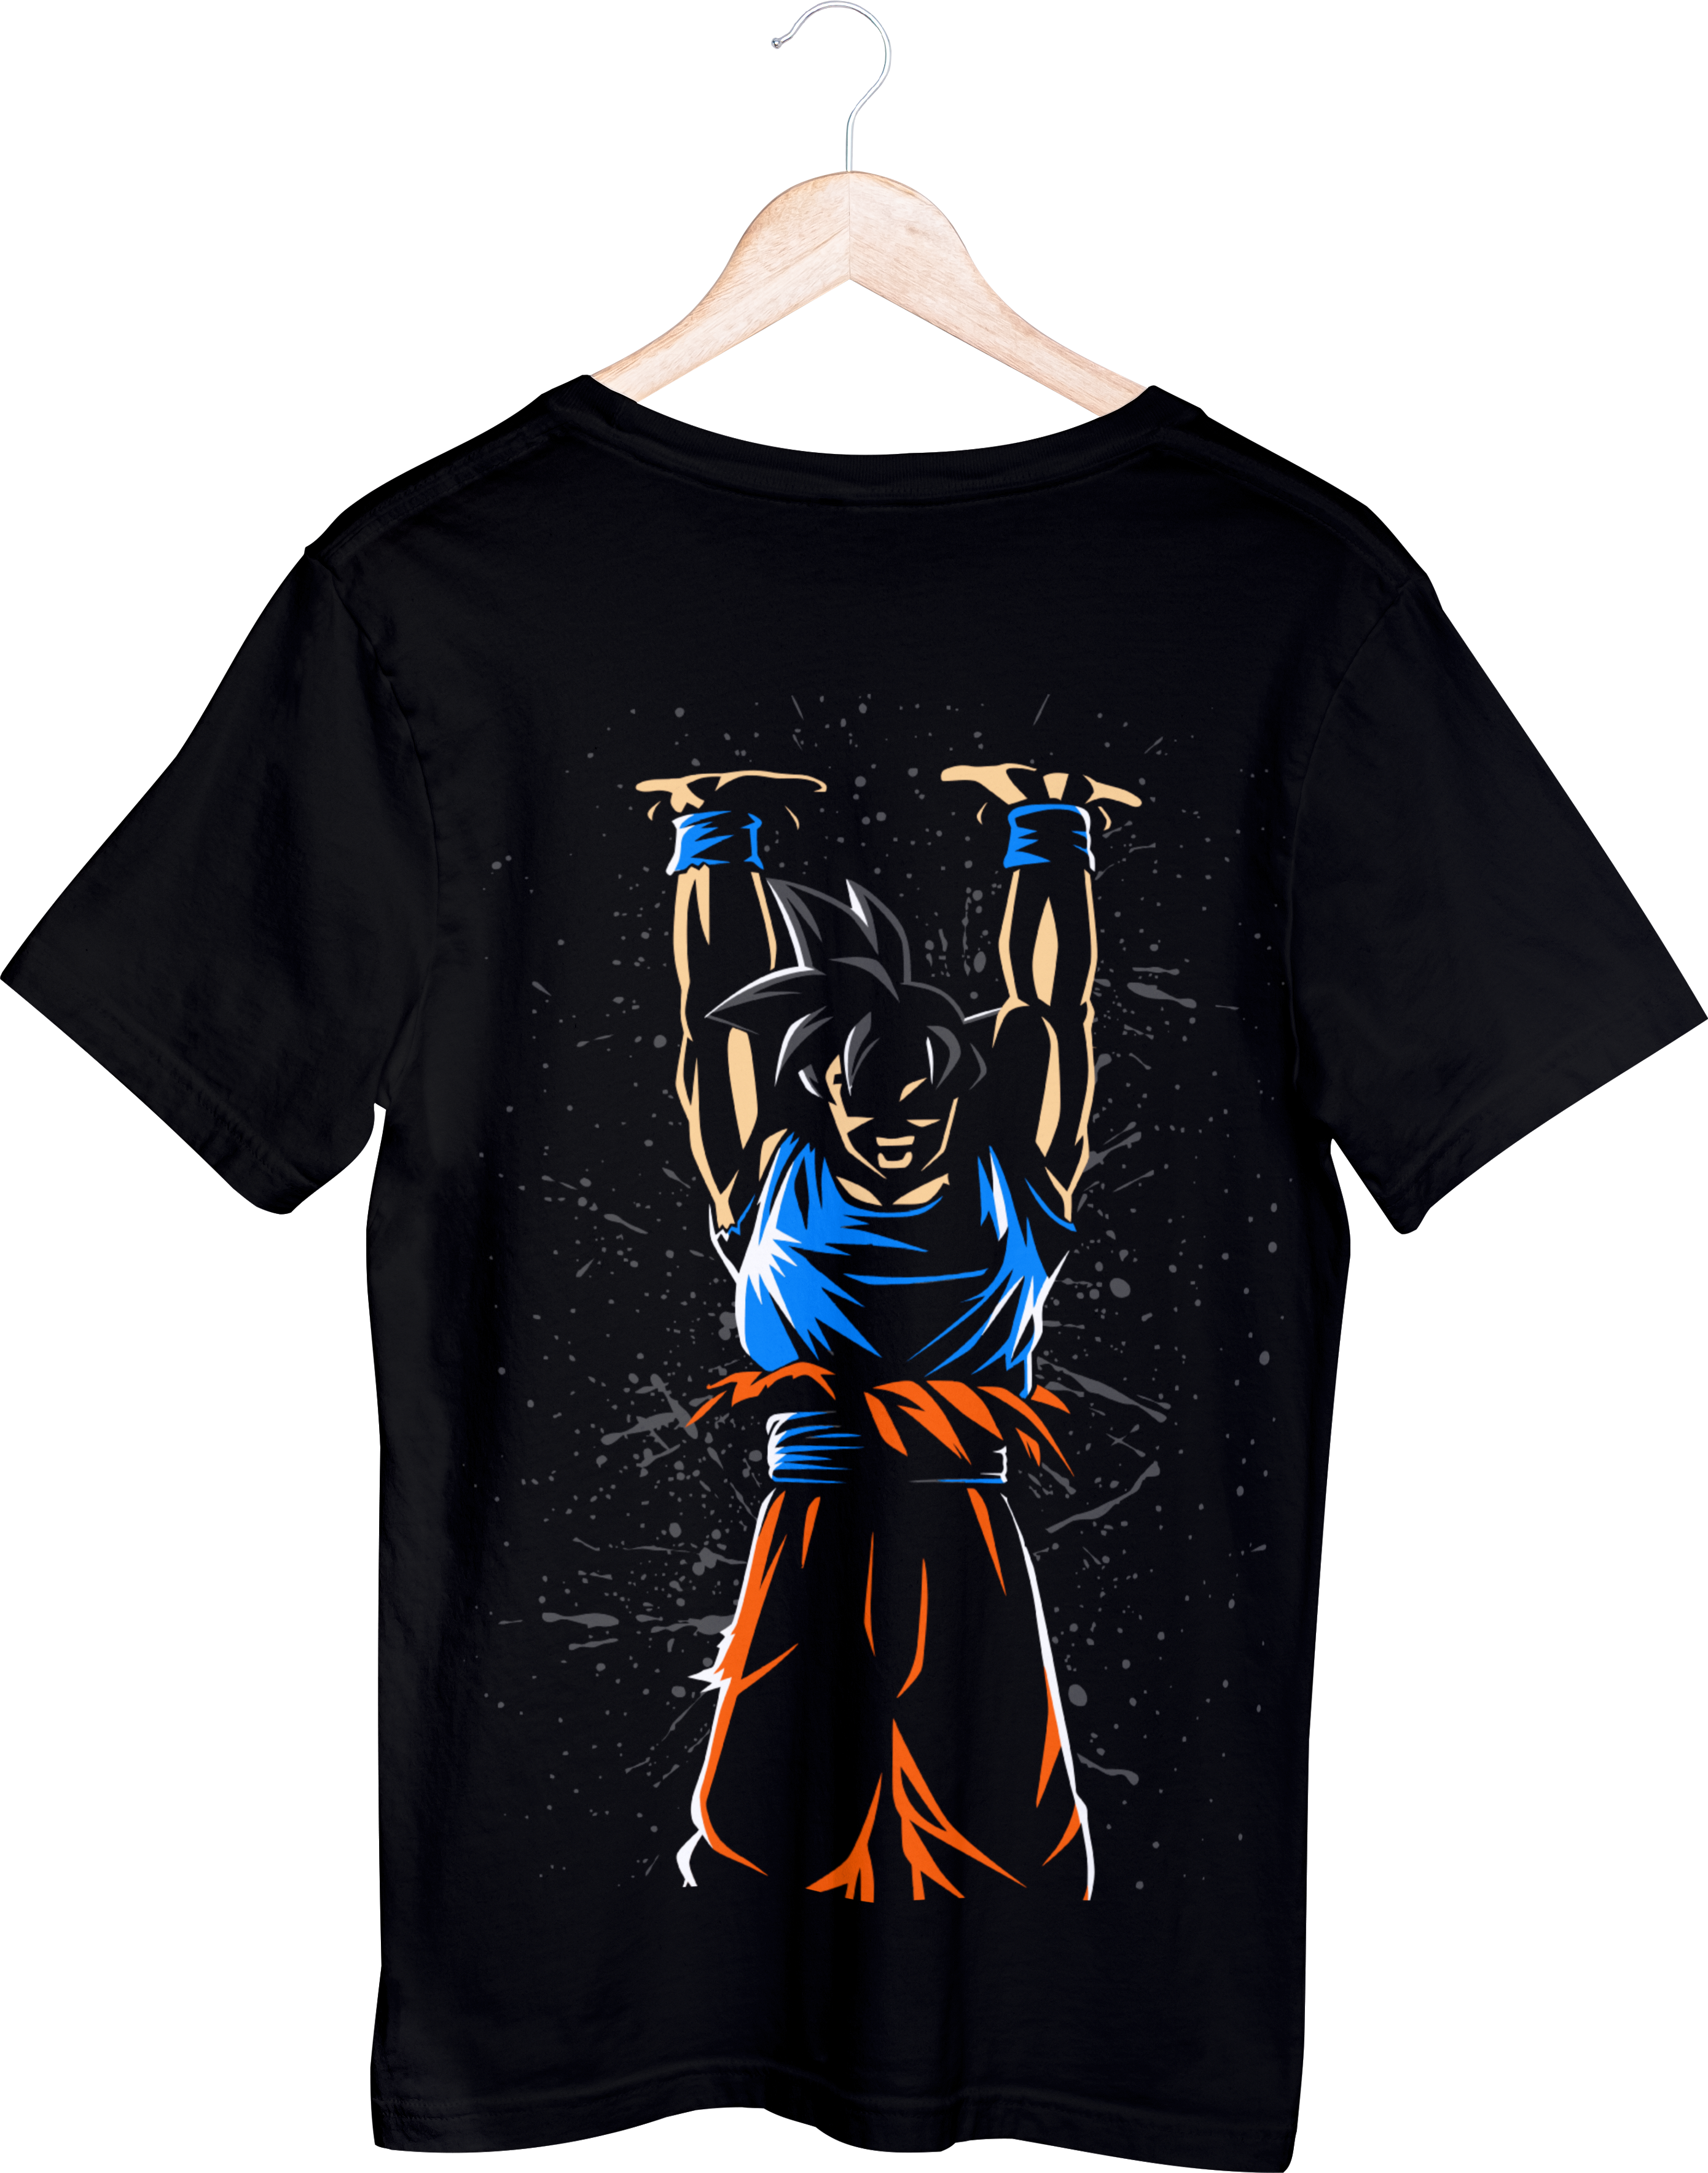 Dragon Ball Tops - חולצה גוקו אוסף אנרגיה - דרגון בול